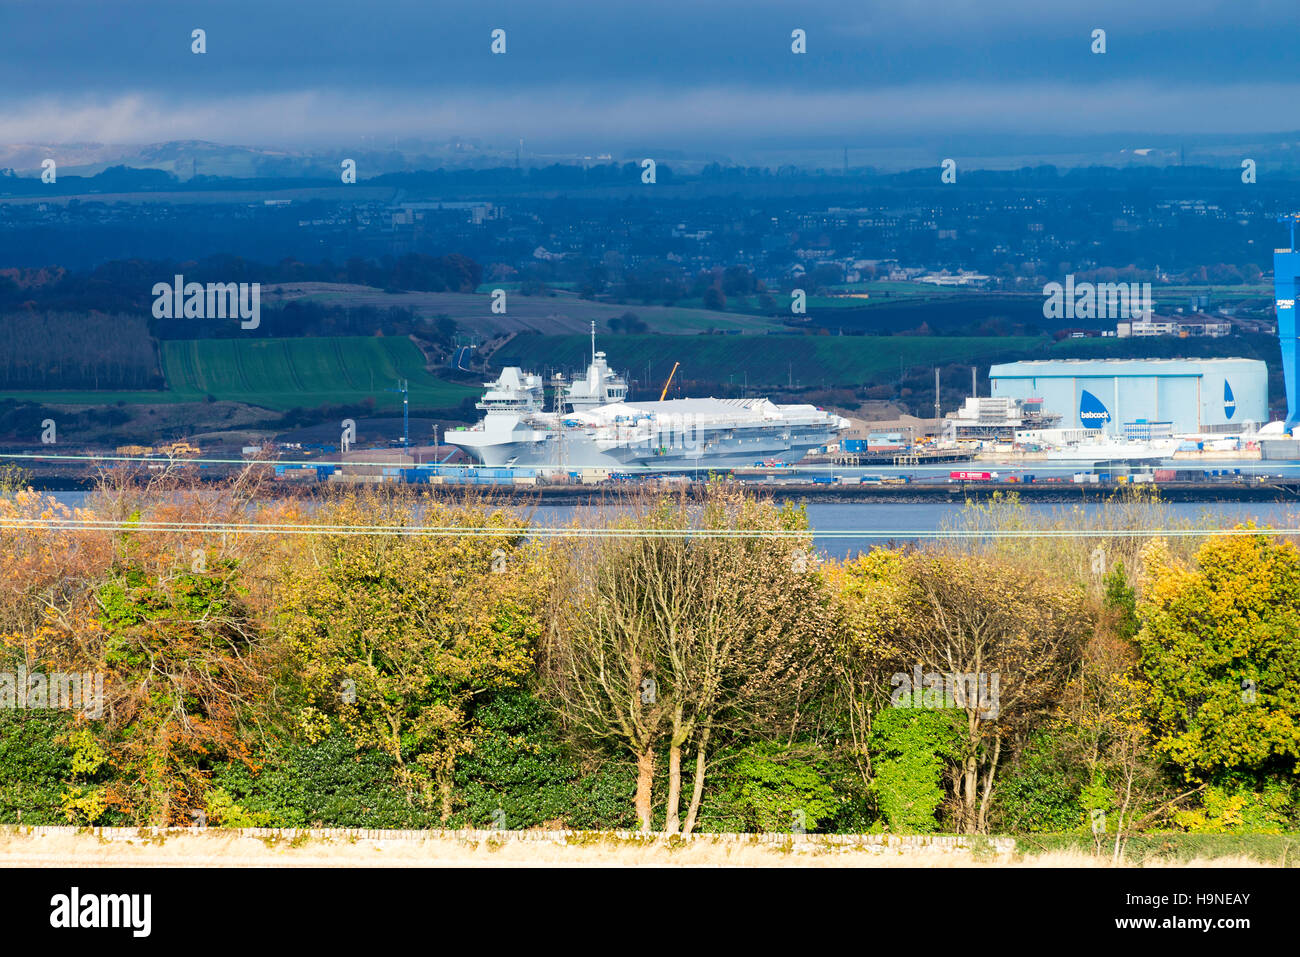 Zwei königliche Marine Flugzeugträger im Bau in Rosyth Naval Dockyard Fife Schottland Vereinigtes Königreich UK Stockfoto